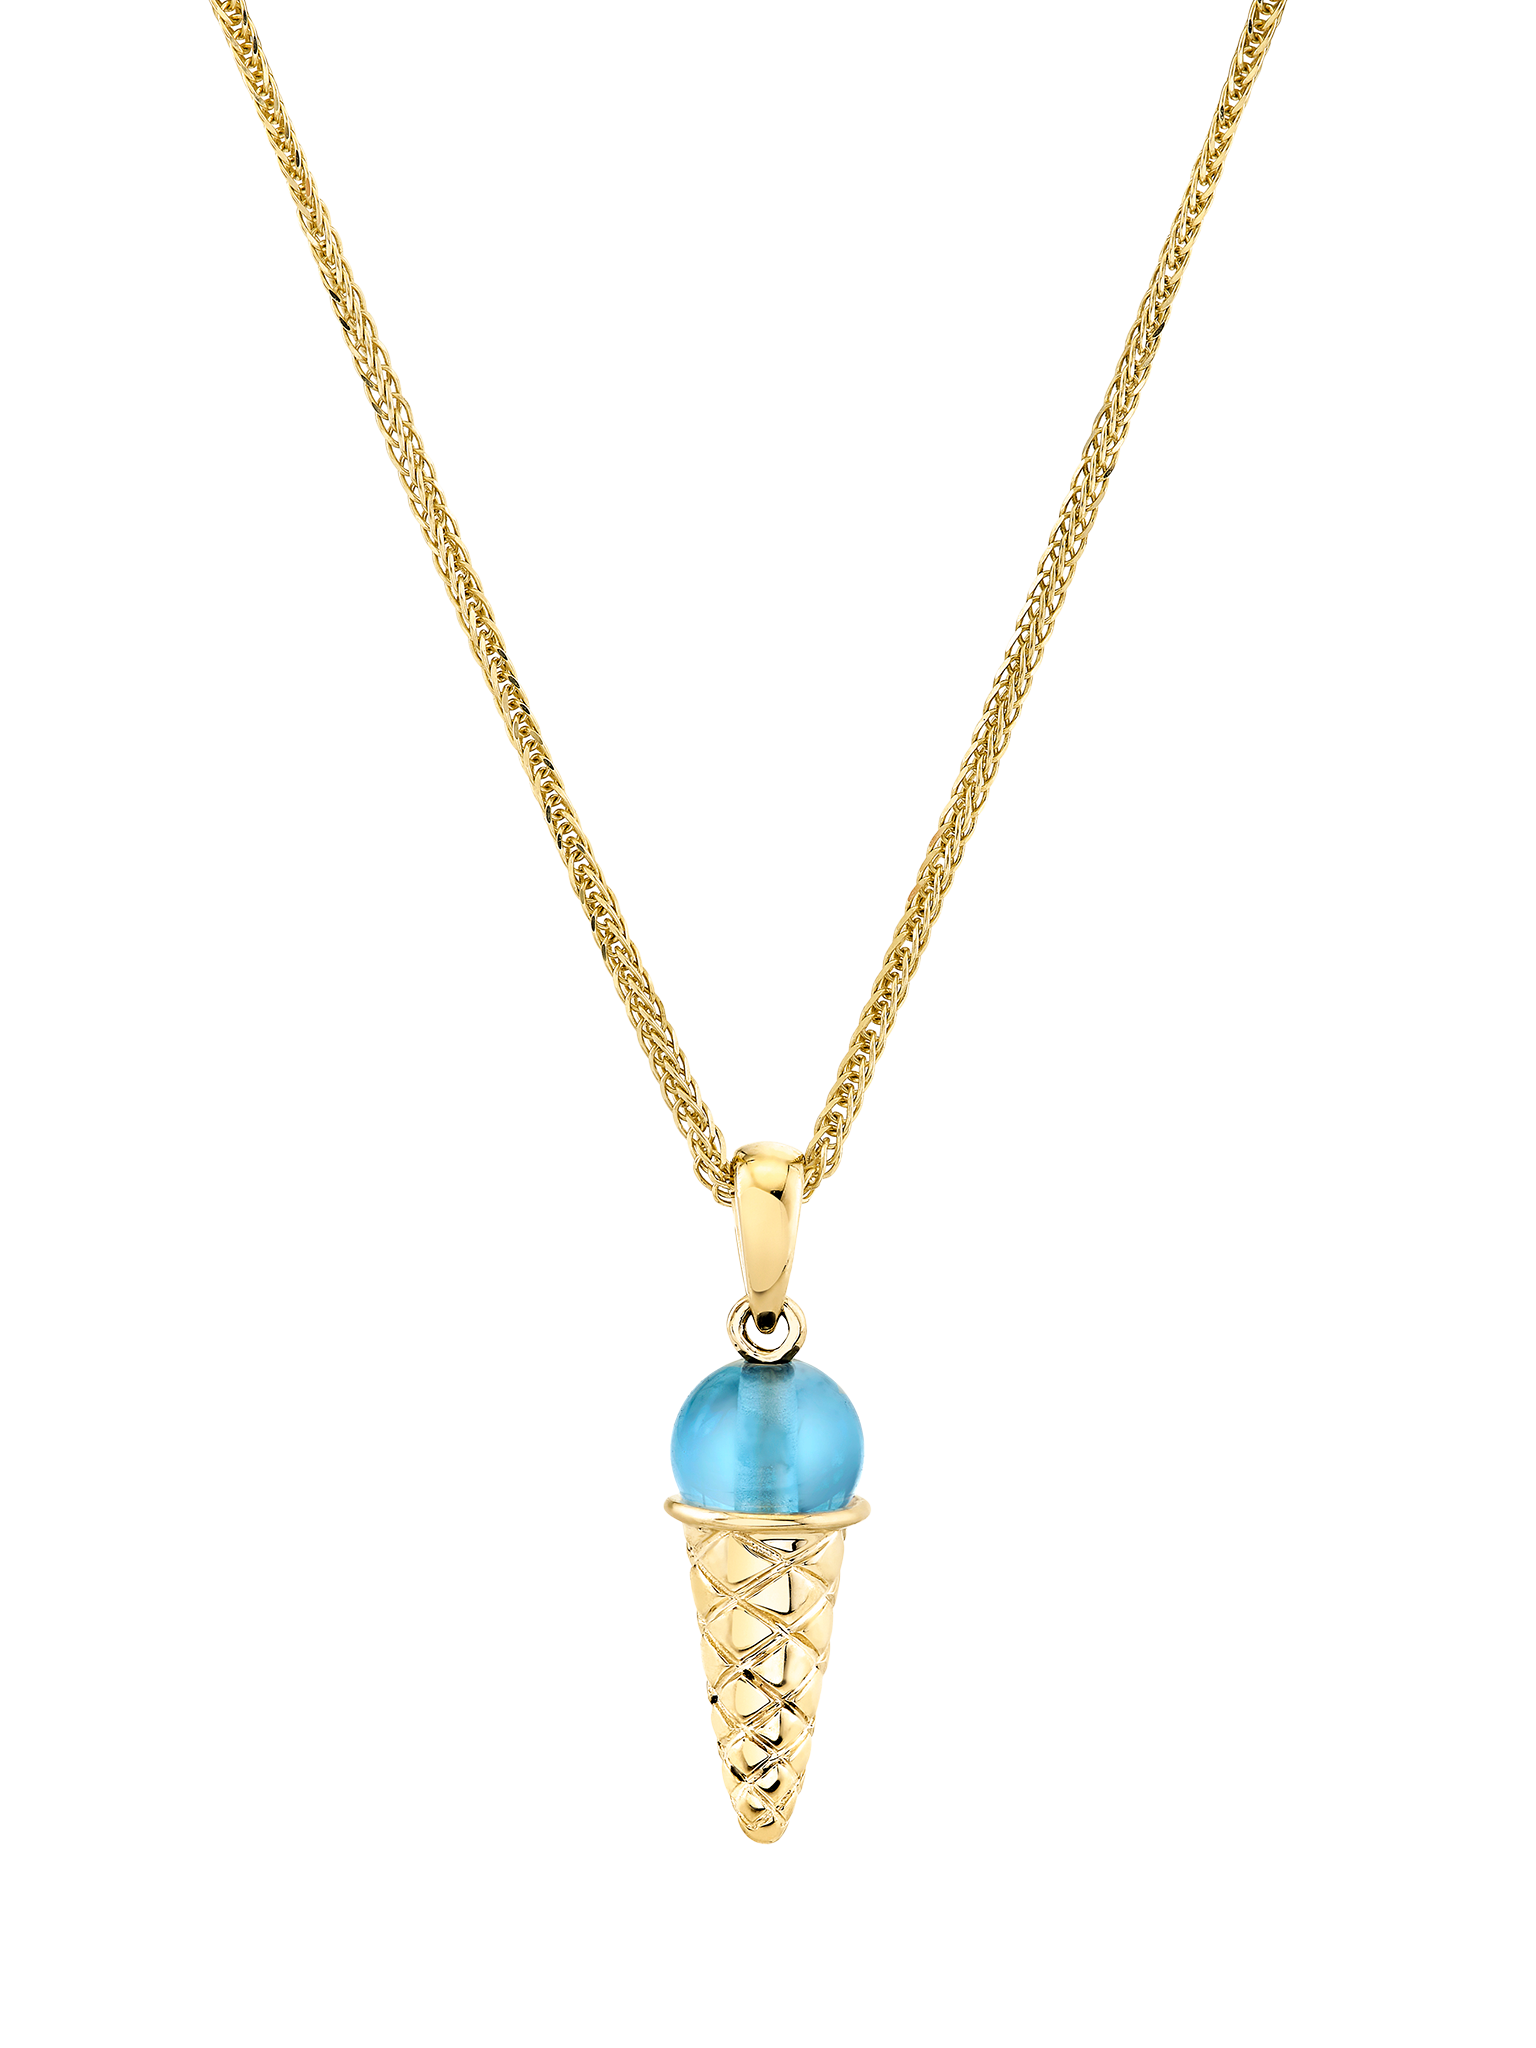 Swiss blue topaz ice cream charm necklace